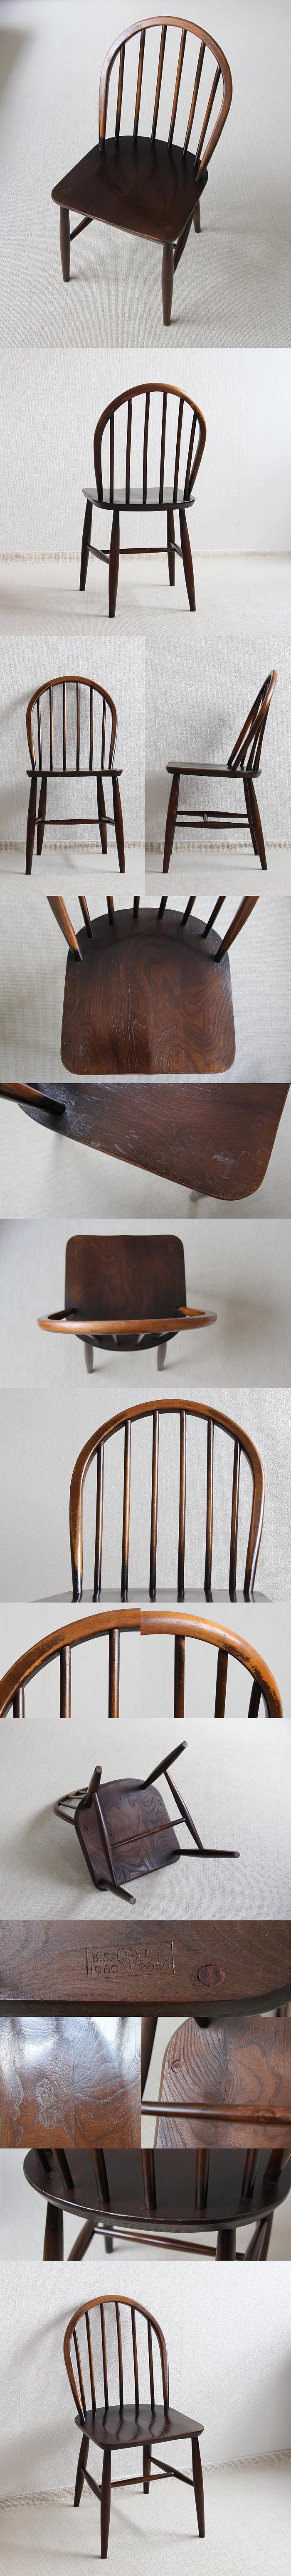 イギリス アンティーク アーコール フープバックチェア ダイニングチェア 木製椅子 家具 「ercol」V-733